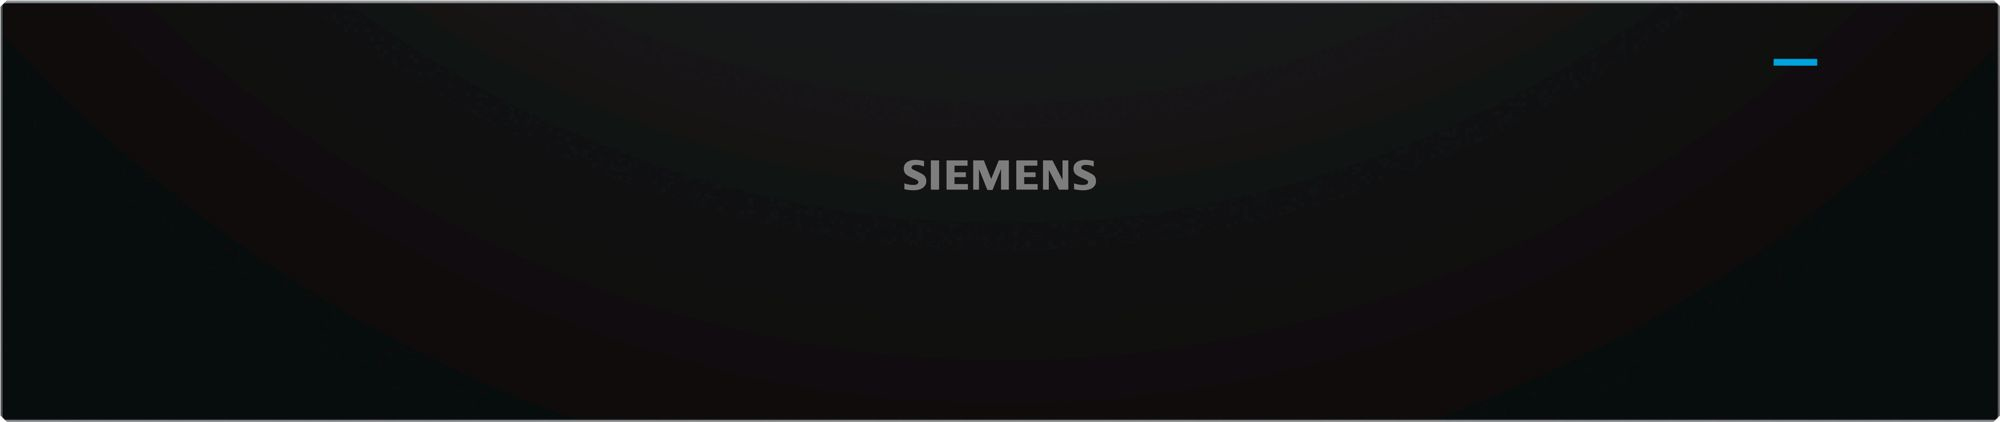 Siemens warmhoudlade bi510cnr0